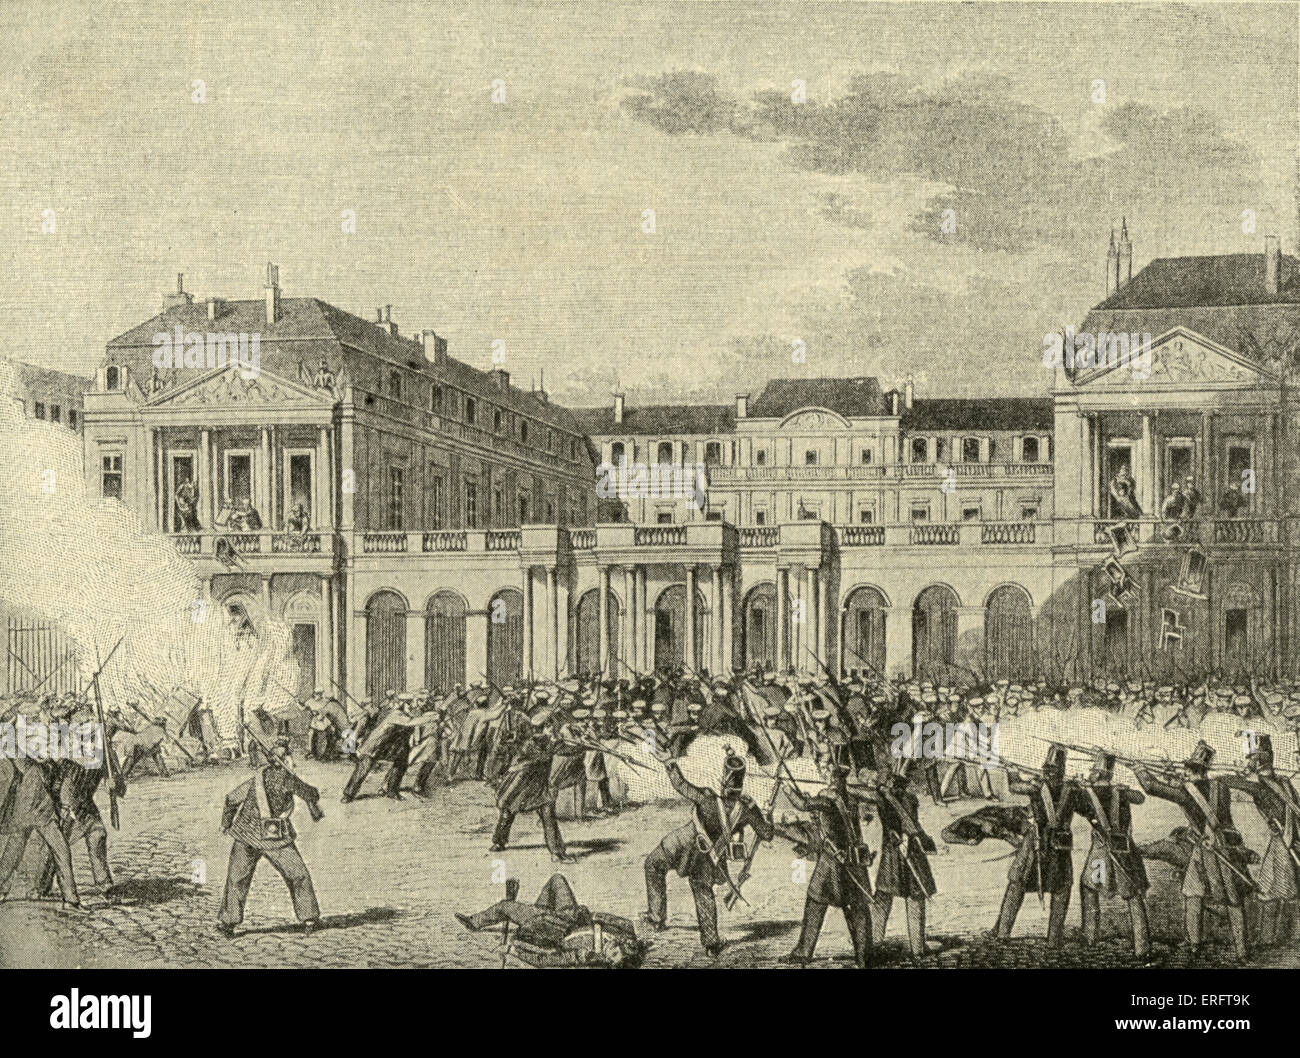 Le Palais Royal à Paris pillées pendant la révolution de février 1848, le 24 février 1848. Gravure sur bois du journal allemand Banque D'Images